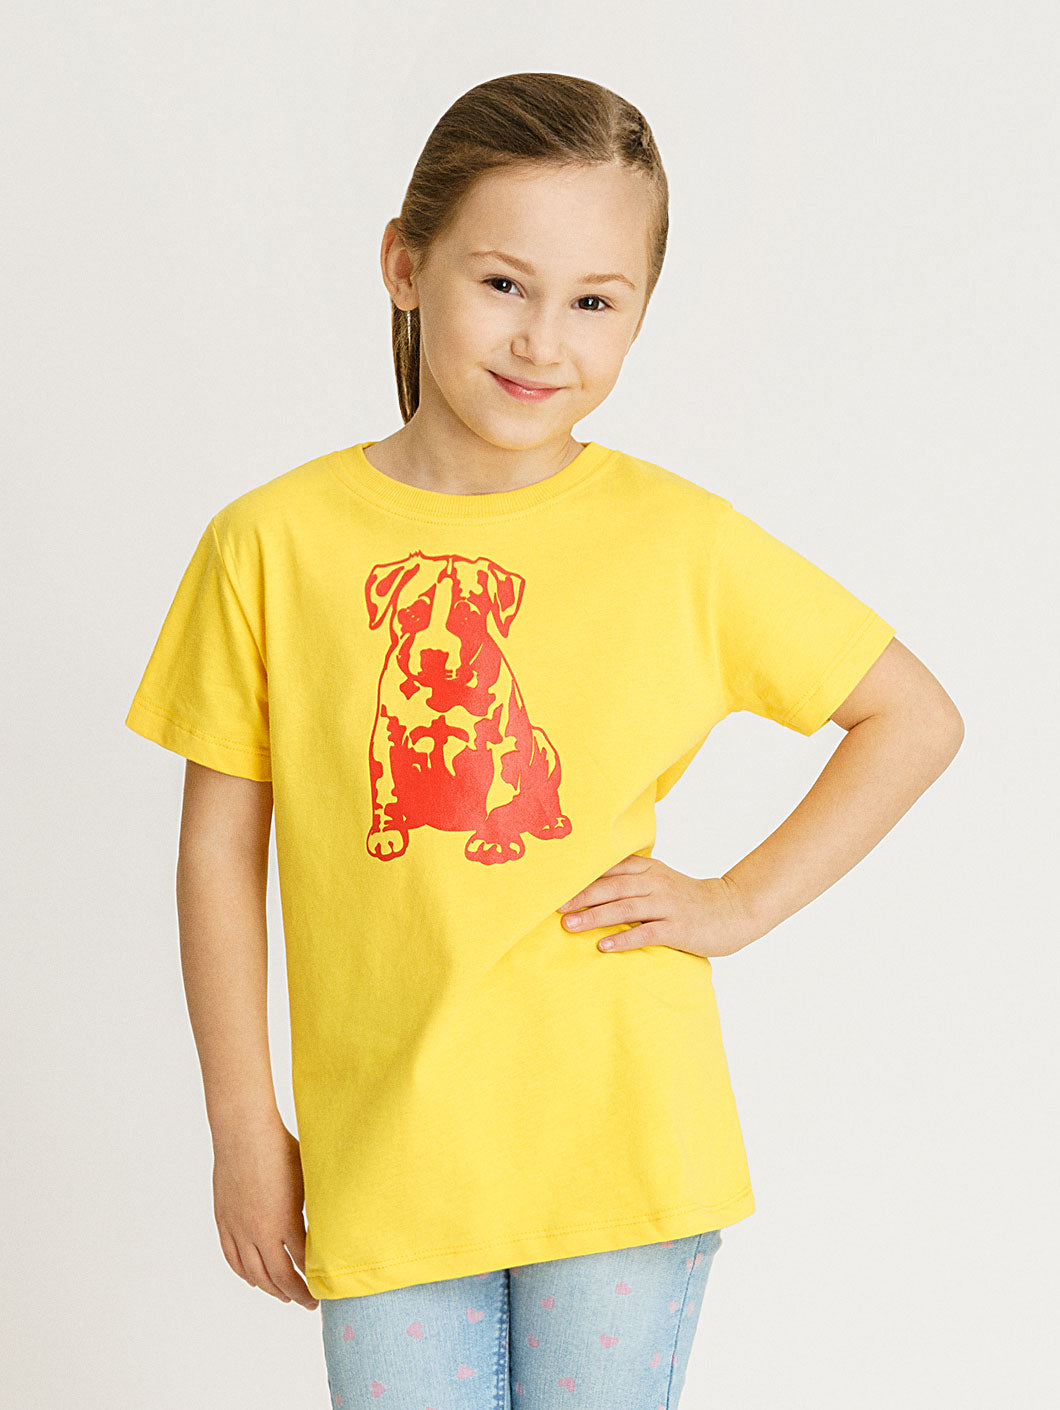 Babystaff Kids Logo T-Shirt gelb - 10